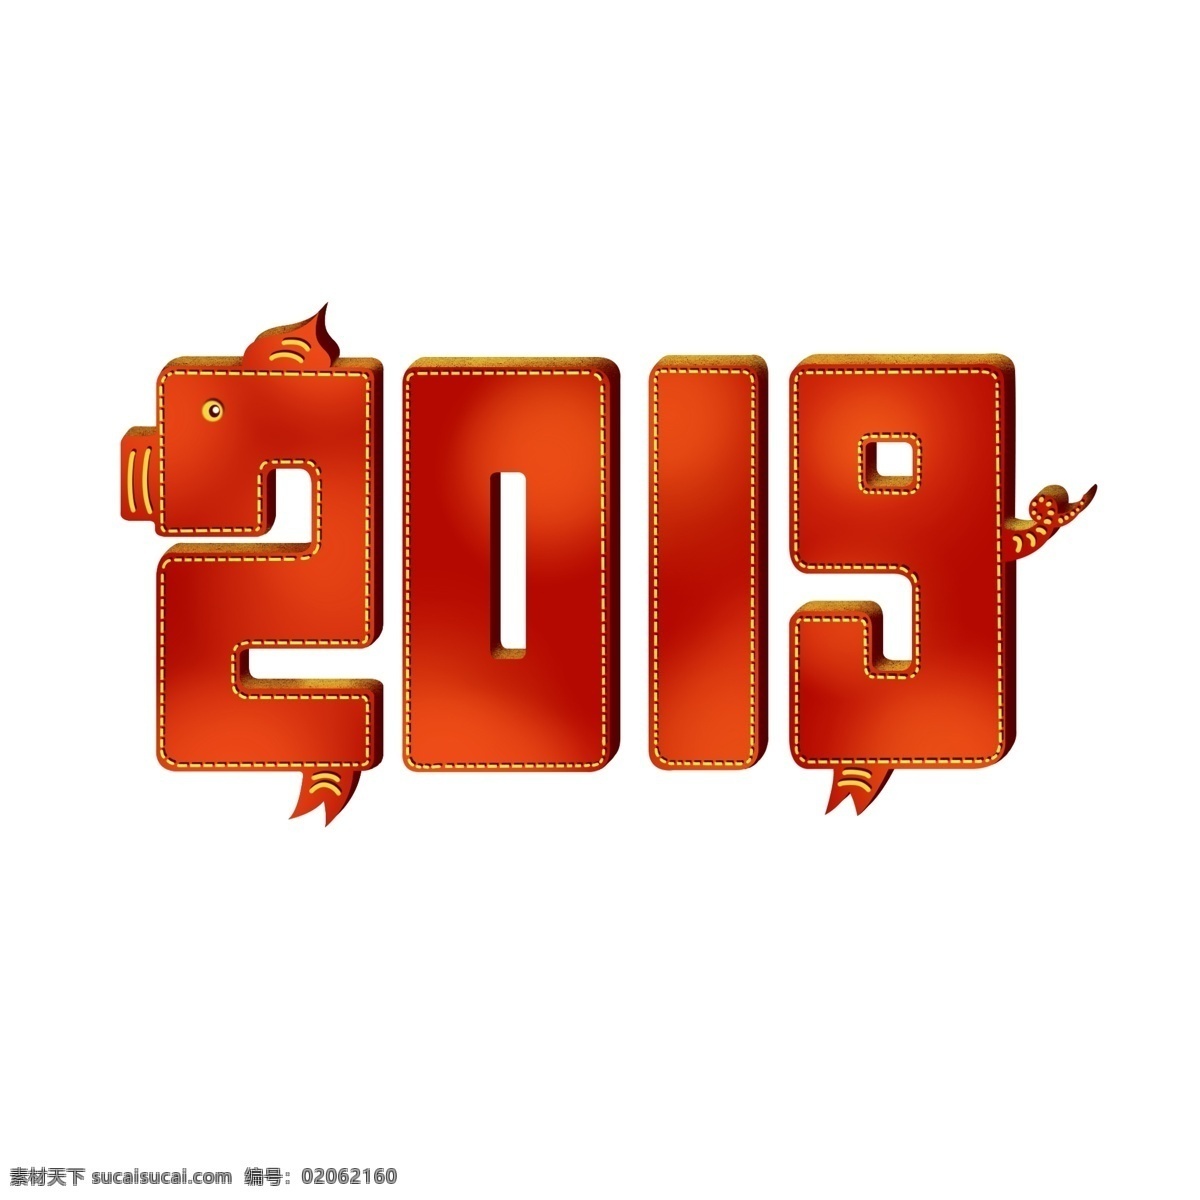 2019 艺术 字 喜庆 猪年 手绘 分层 字体 年 新年字体 创意字体 海报文字 商用 新年 插画 数字 ps 元素 卡通 手绘猪年字体